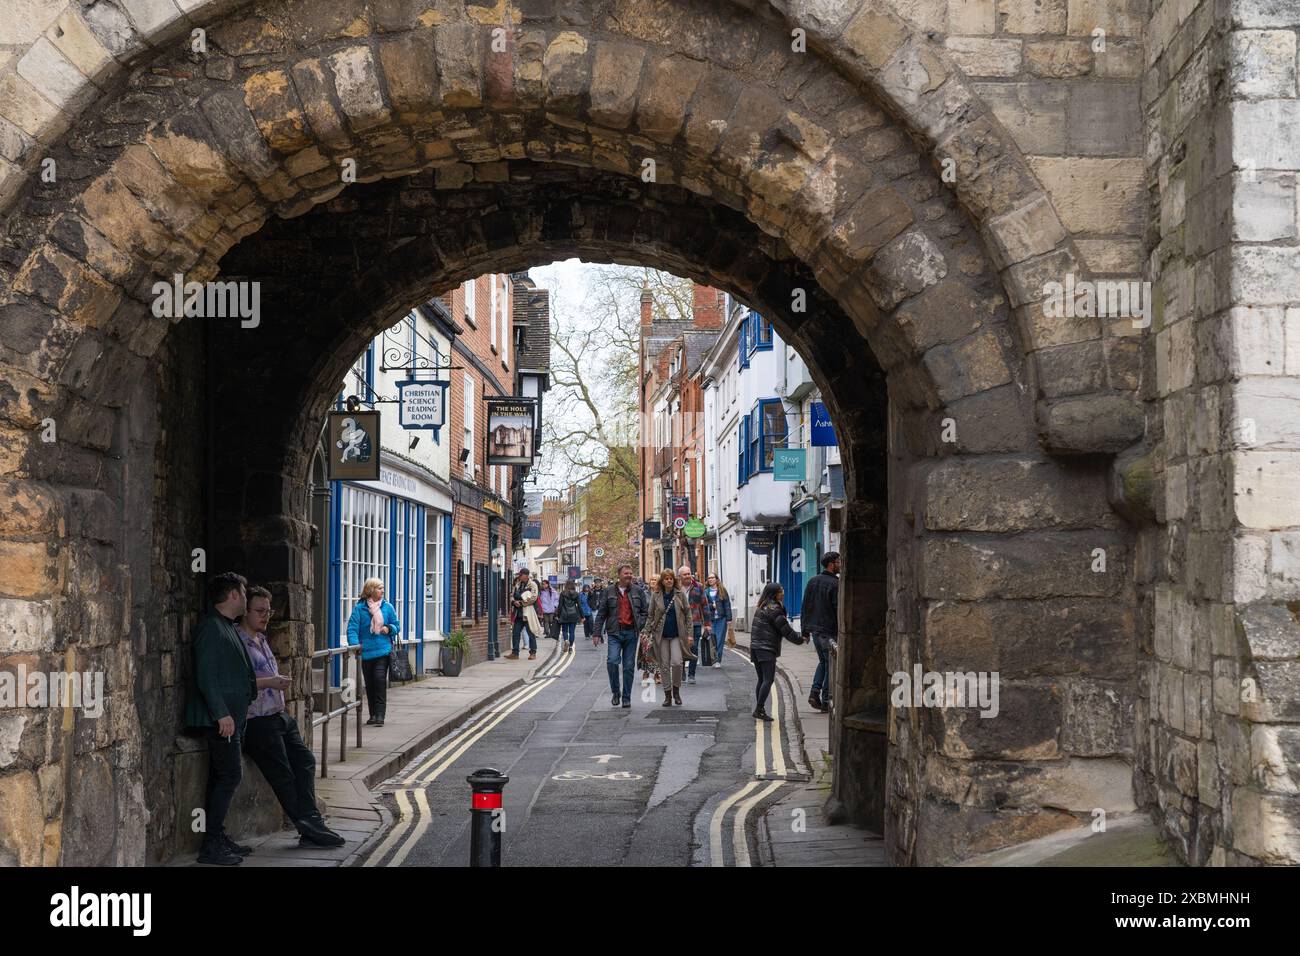 Das Tor zur Abbey Wall in der historischen ummauerten Stadt York, England. Dieses Tor wurde 1503 zu Ehren der Prinzessin Margaret durch die Abteimauer durchbrochen Stockfoto